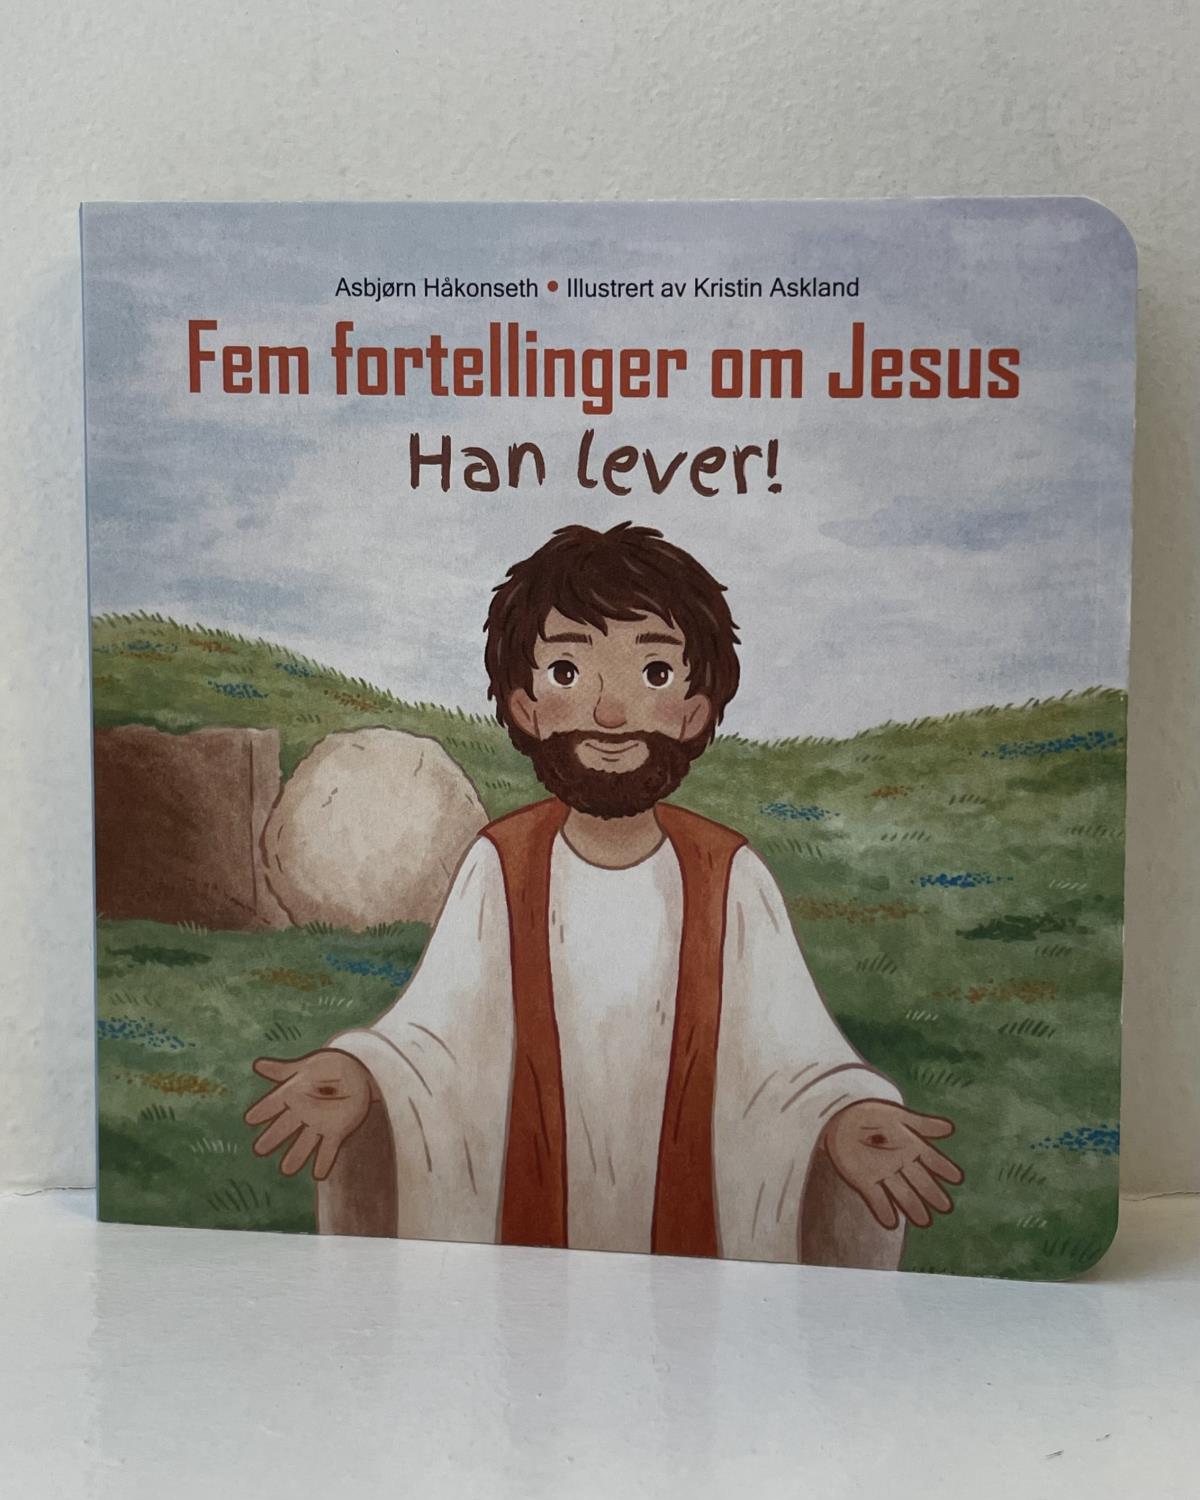 Fem fortellinger om Jesus - Han lever!